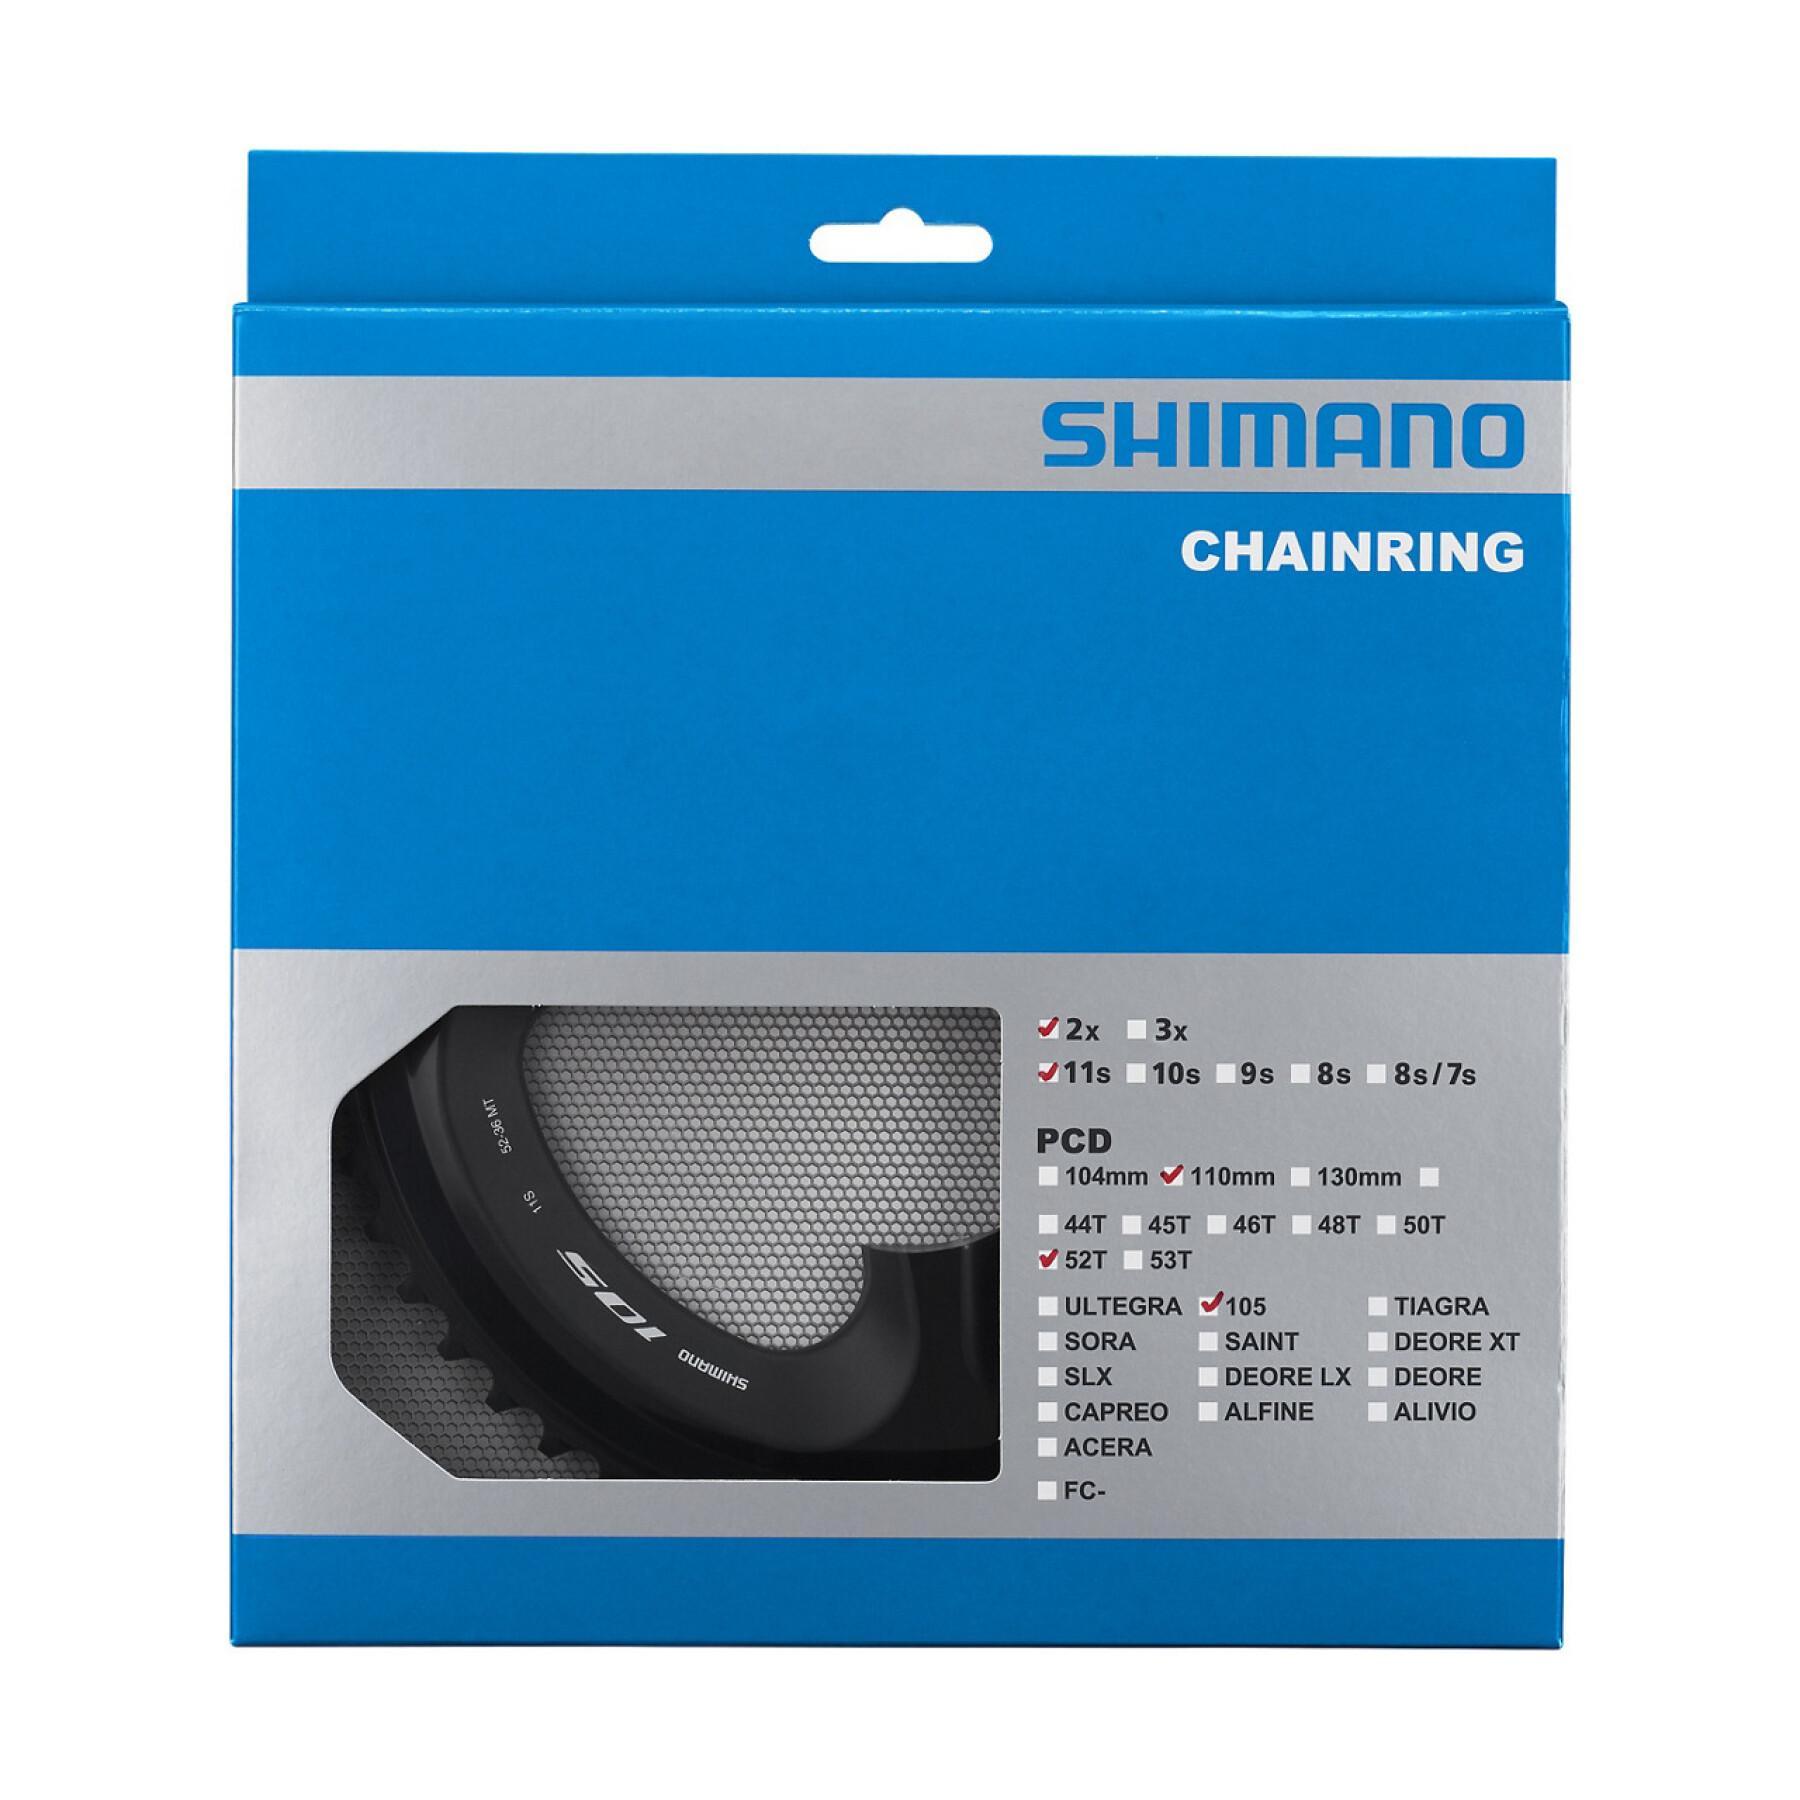 Bandeja Shimano 105 FC-R7000